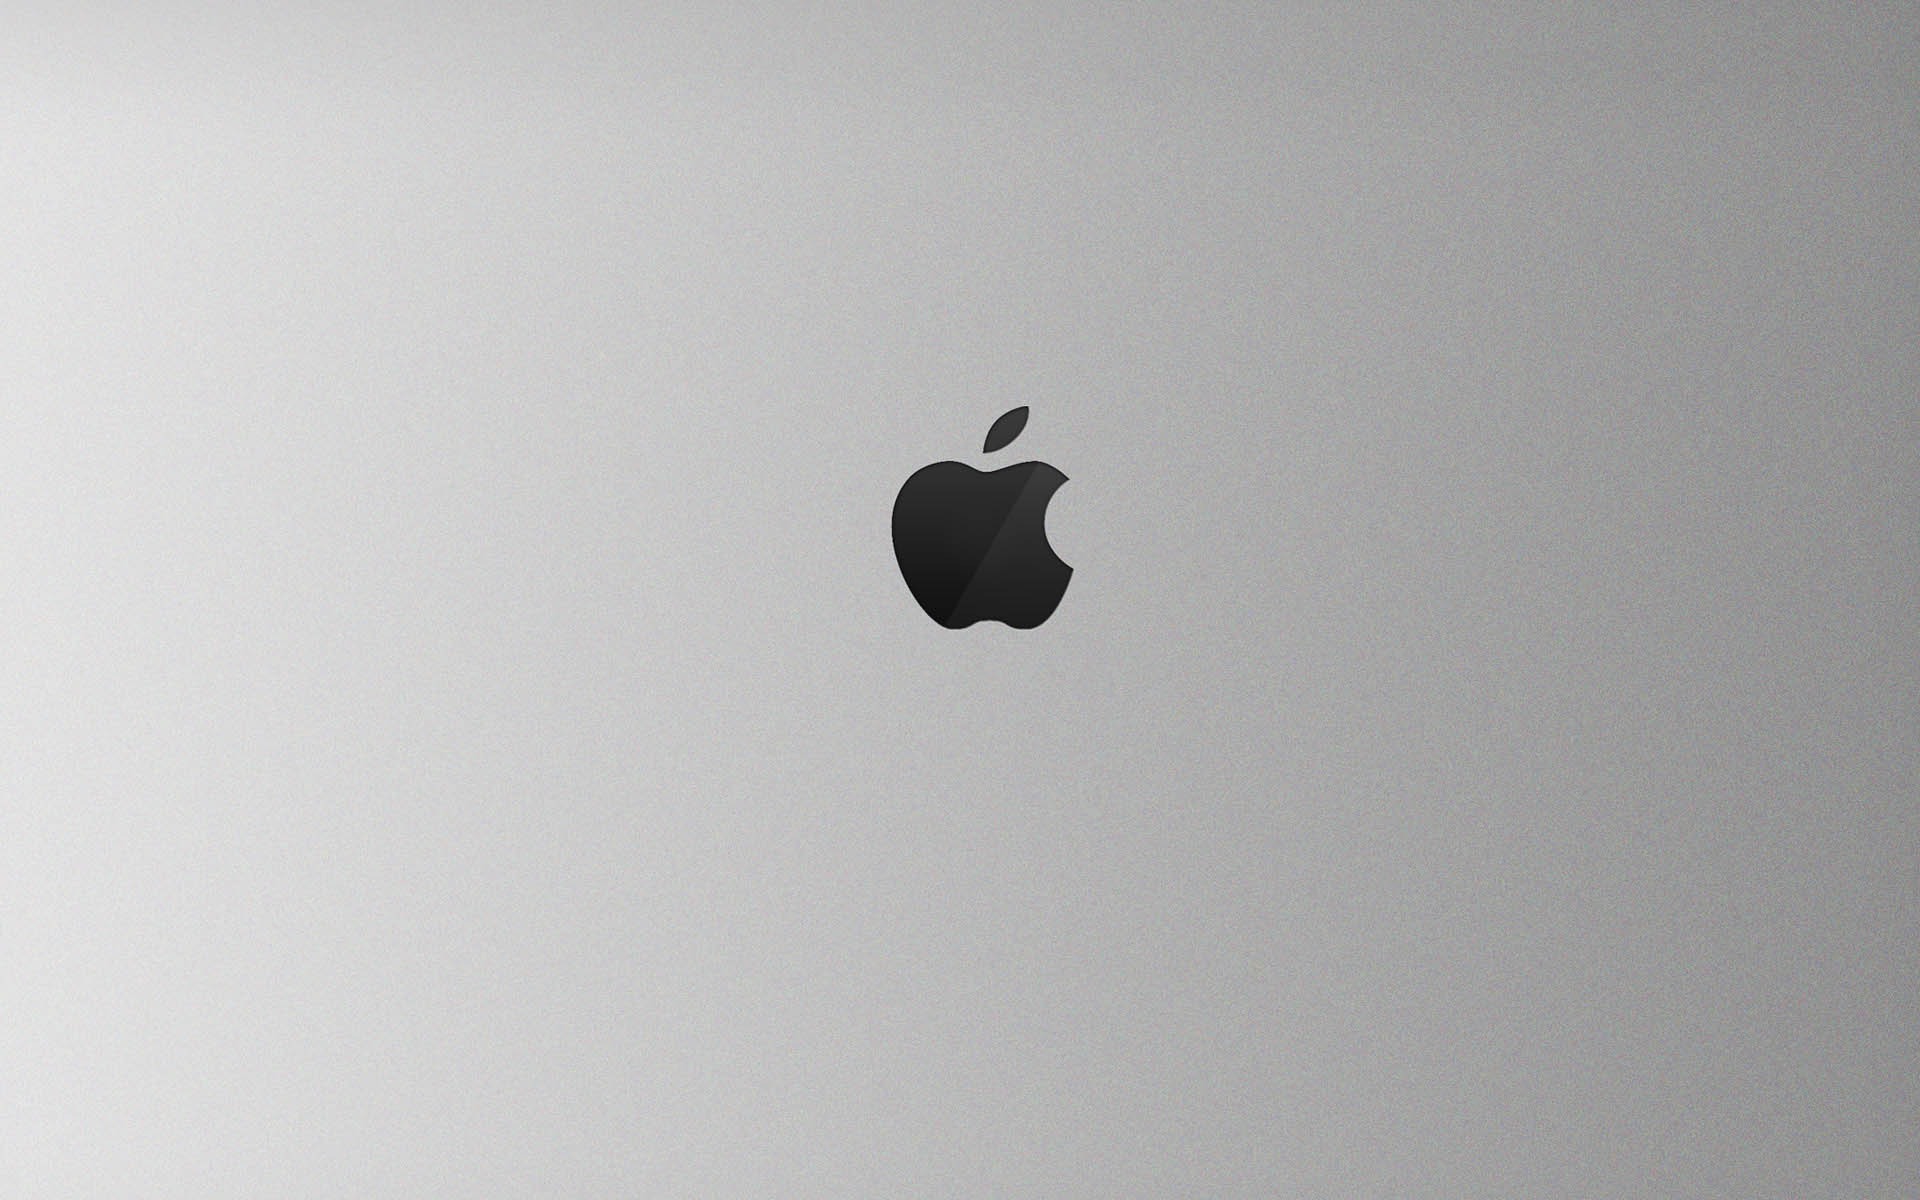 Por qué el logo de Apple es una manzana mordida? - Supercurioso